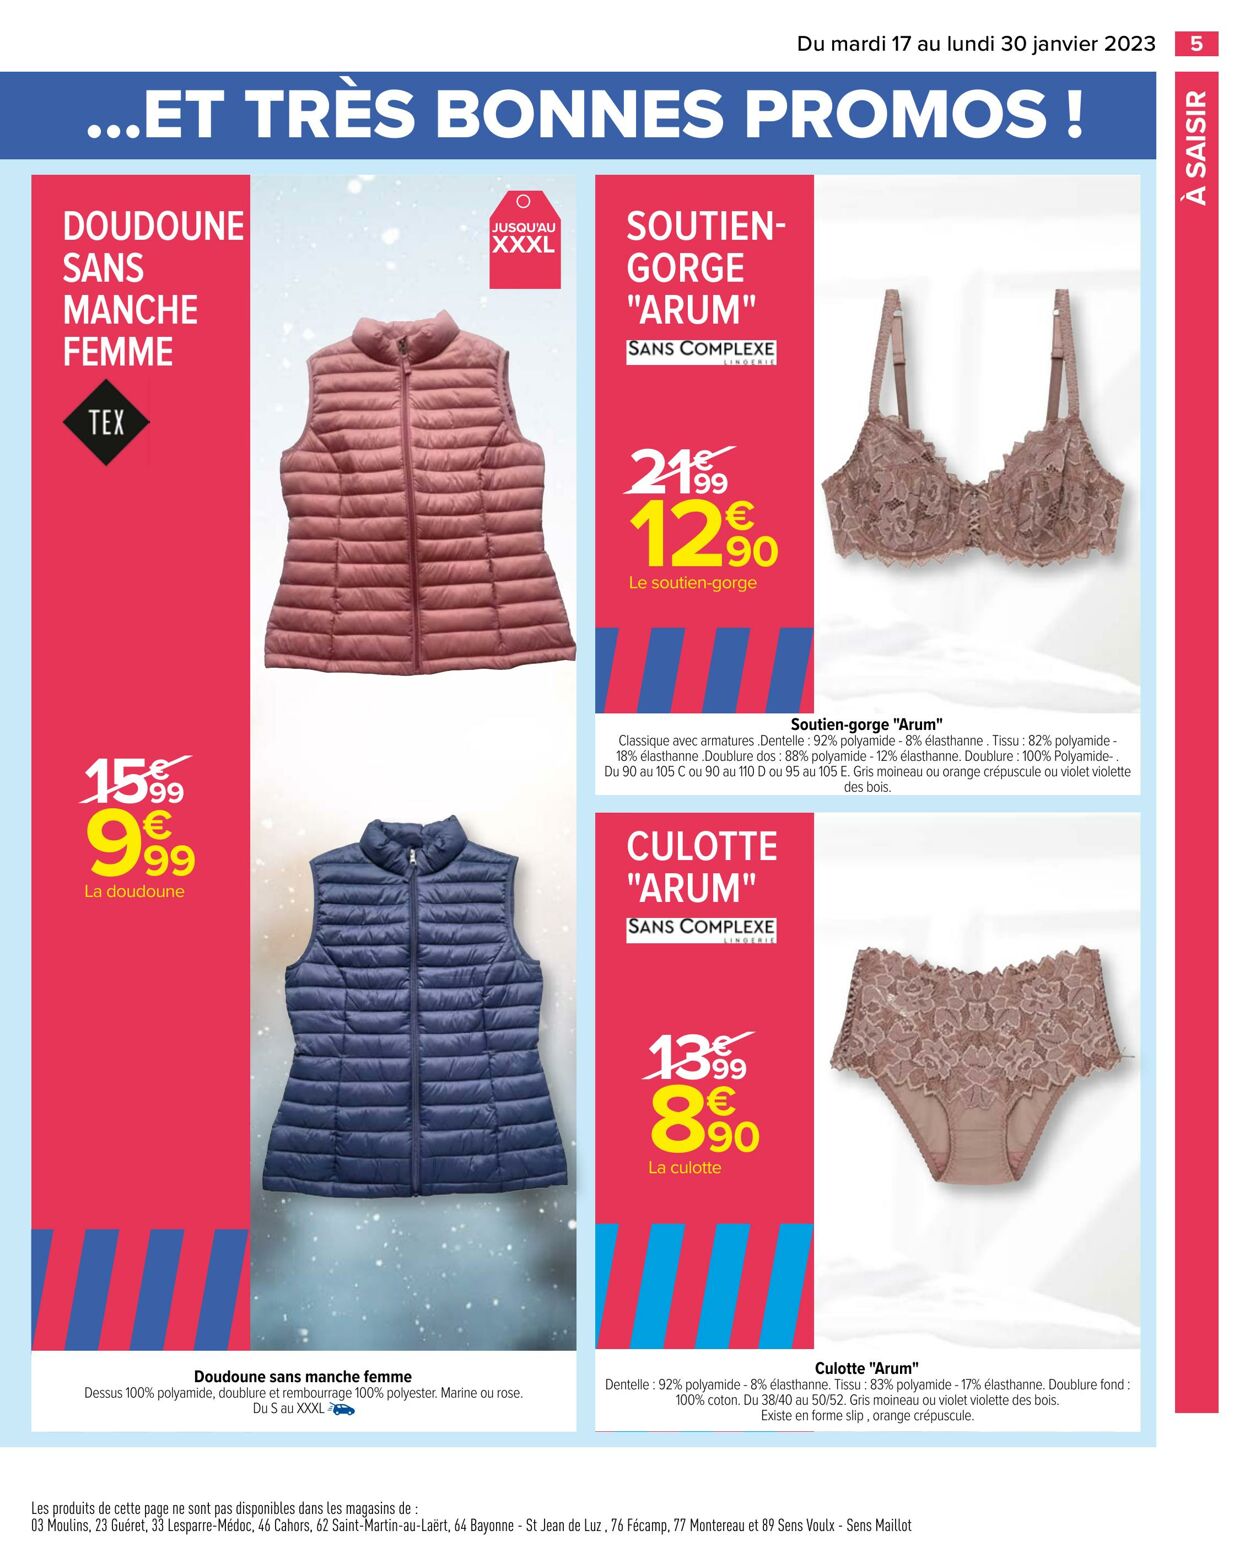 Catalogue Carrefour 17.01.2023 - 30.01.2023